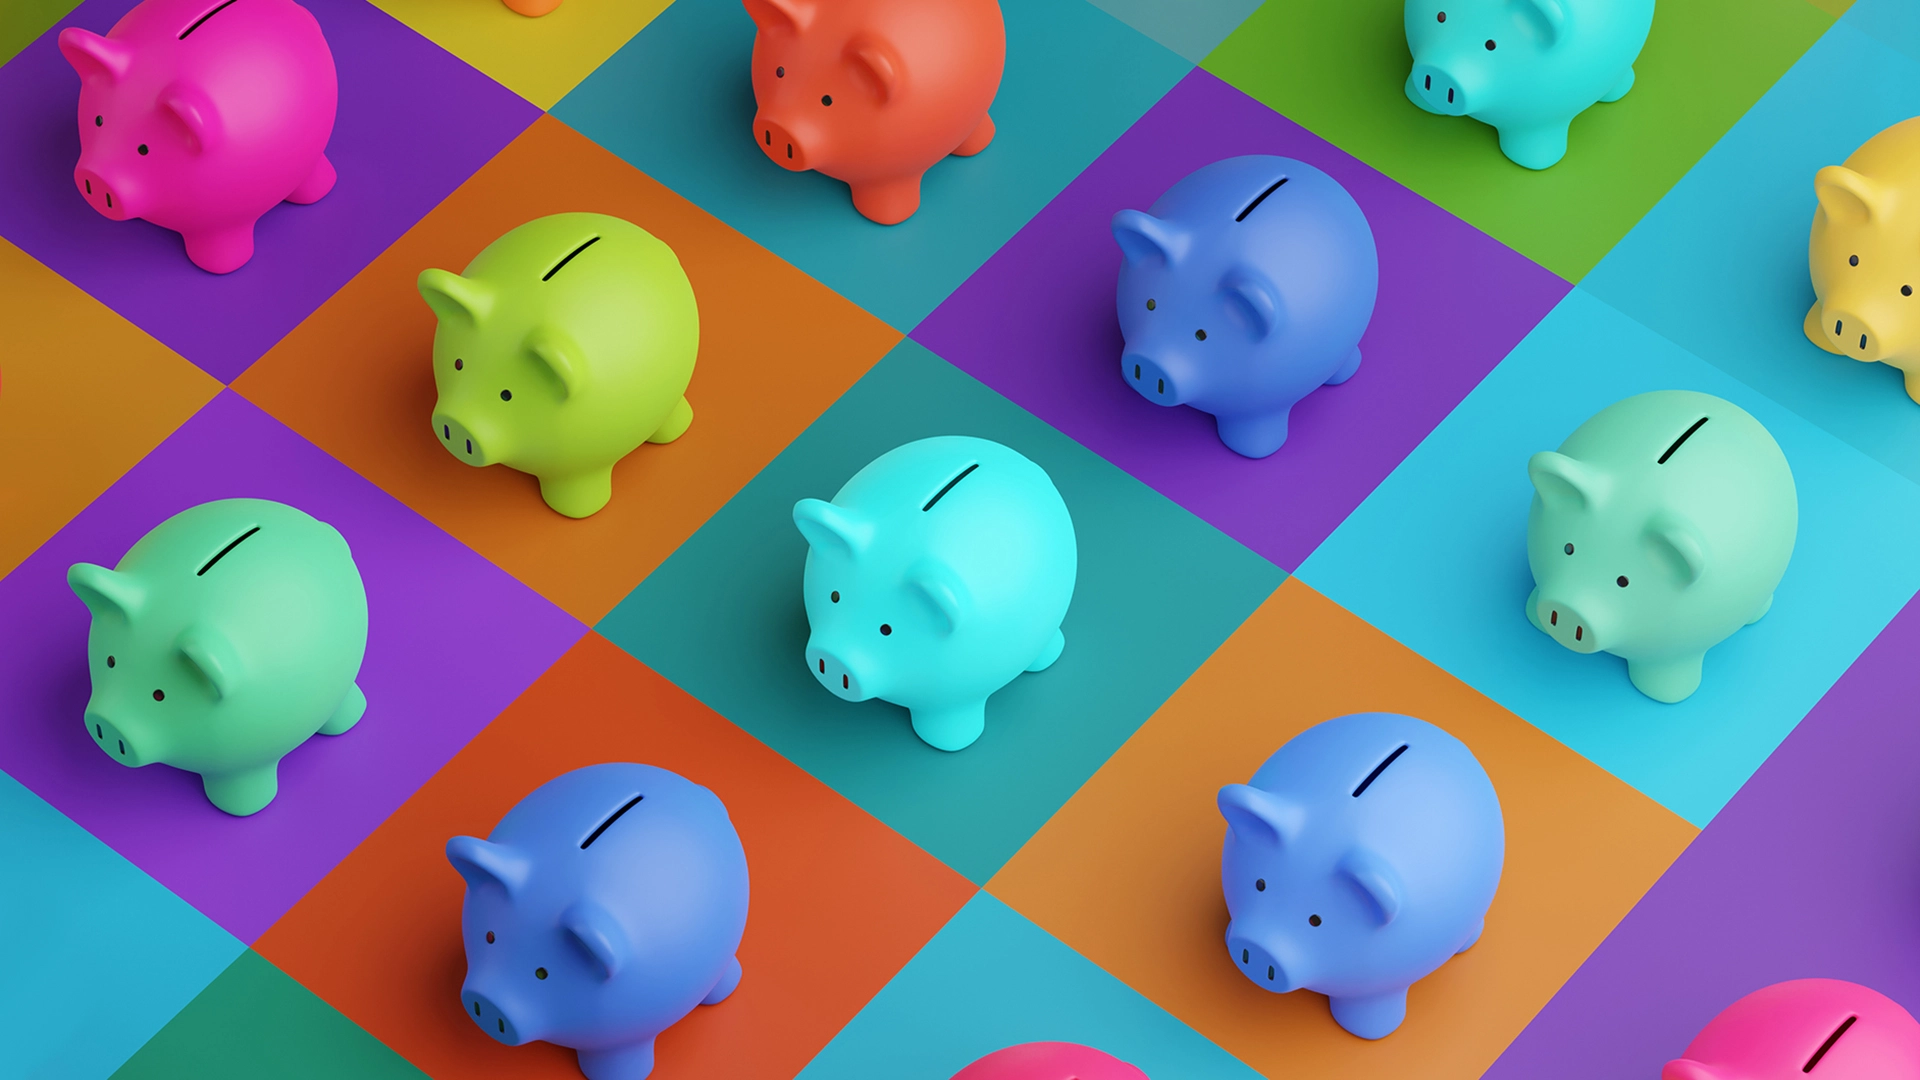 Bares Geld sparen trotz Inflation: Mit diesen drei Tipps geht das schon in der kommenden Woche (Foto: Dragon-Claws/iStock)